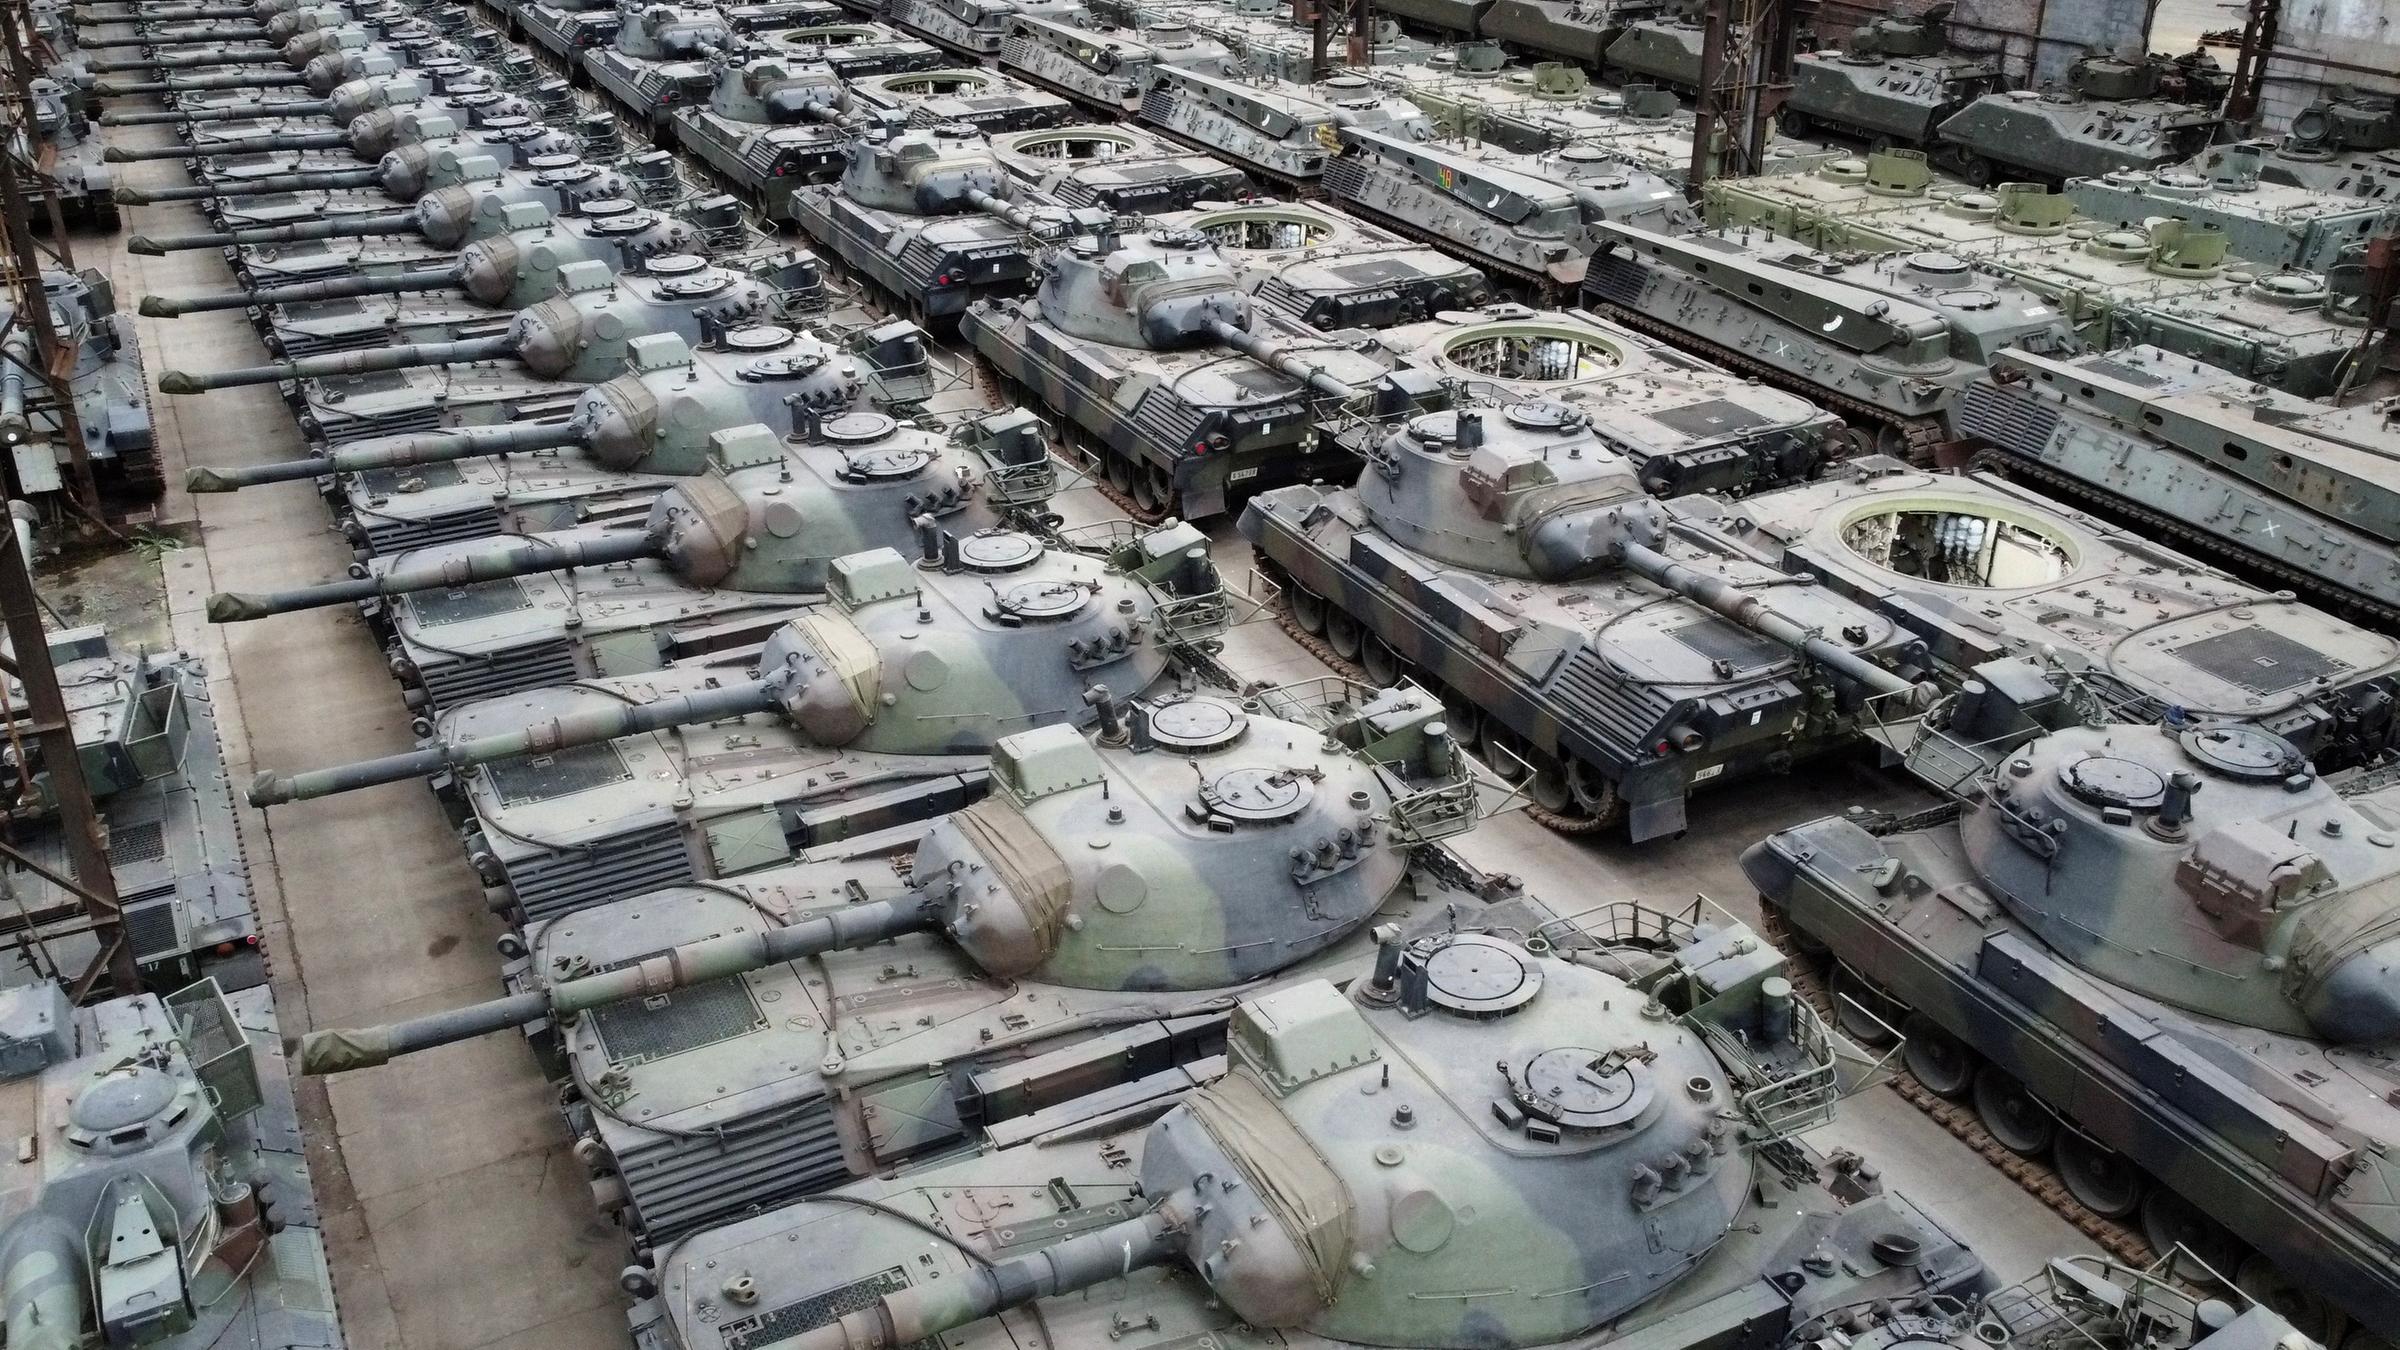 Leopard 1 tank in a hangar in Belgium